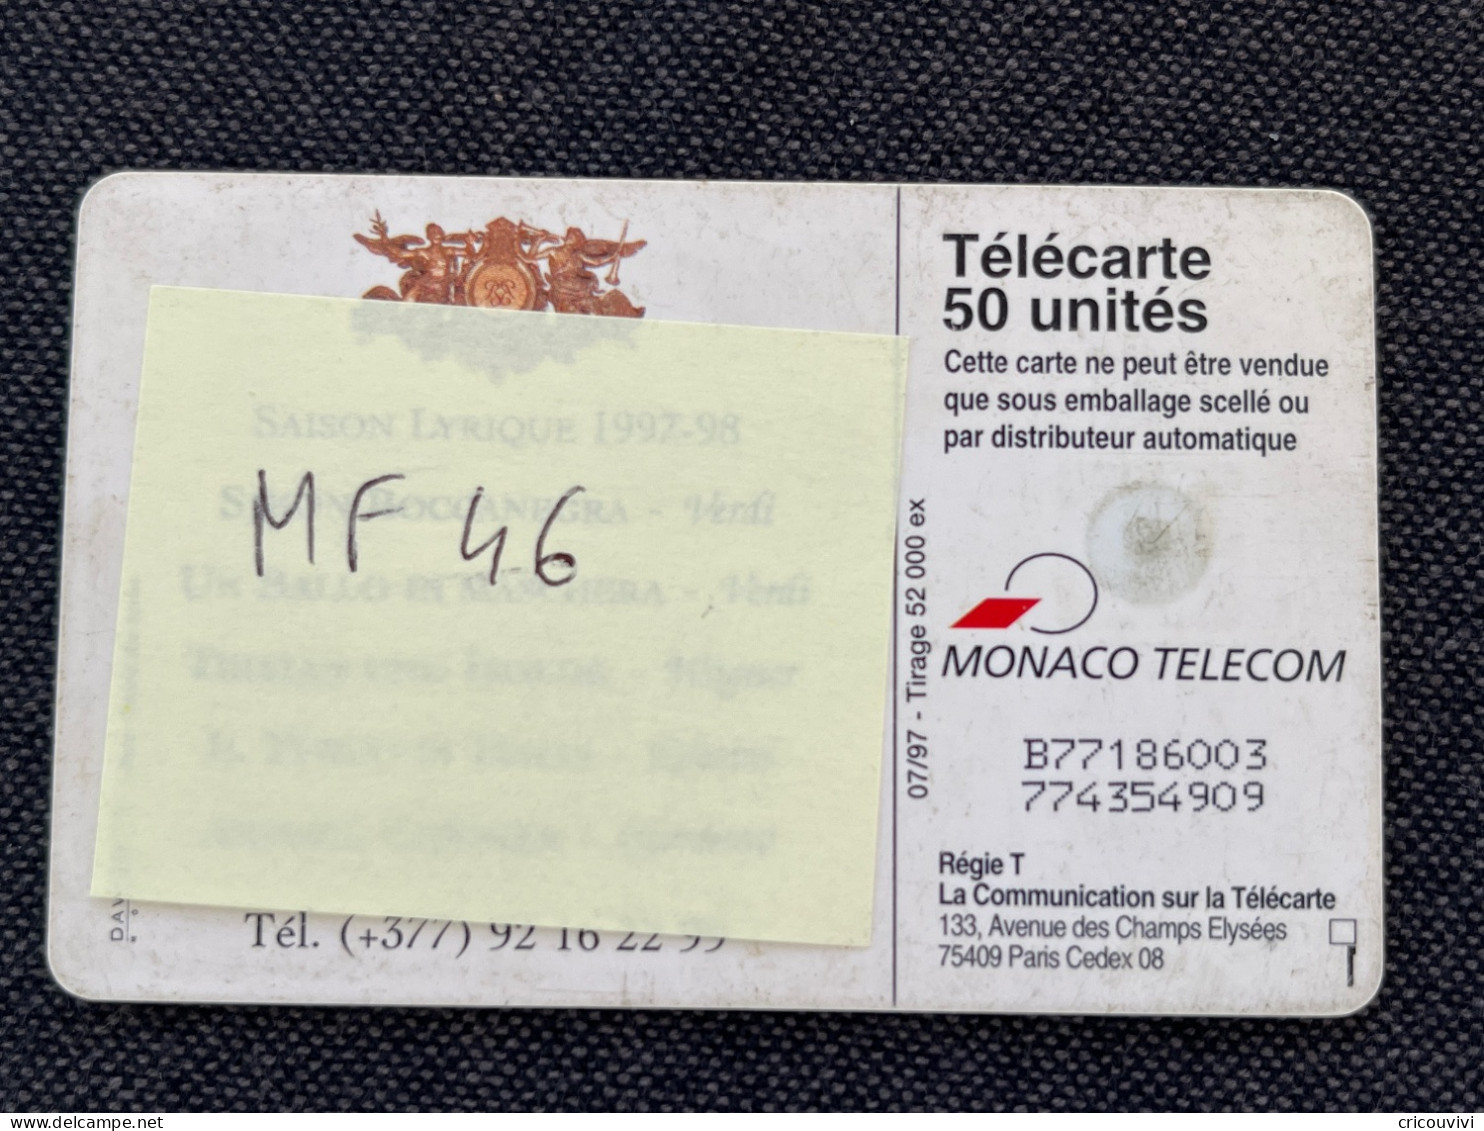 MF 46 - Monaco